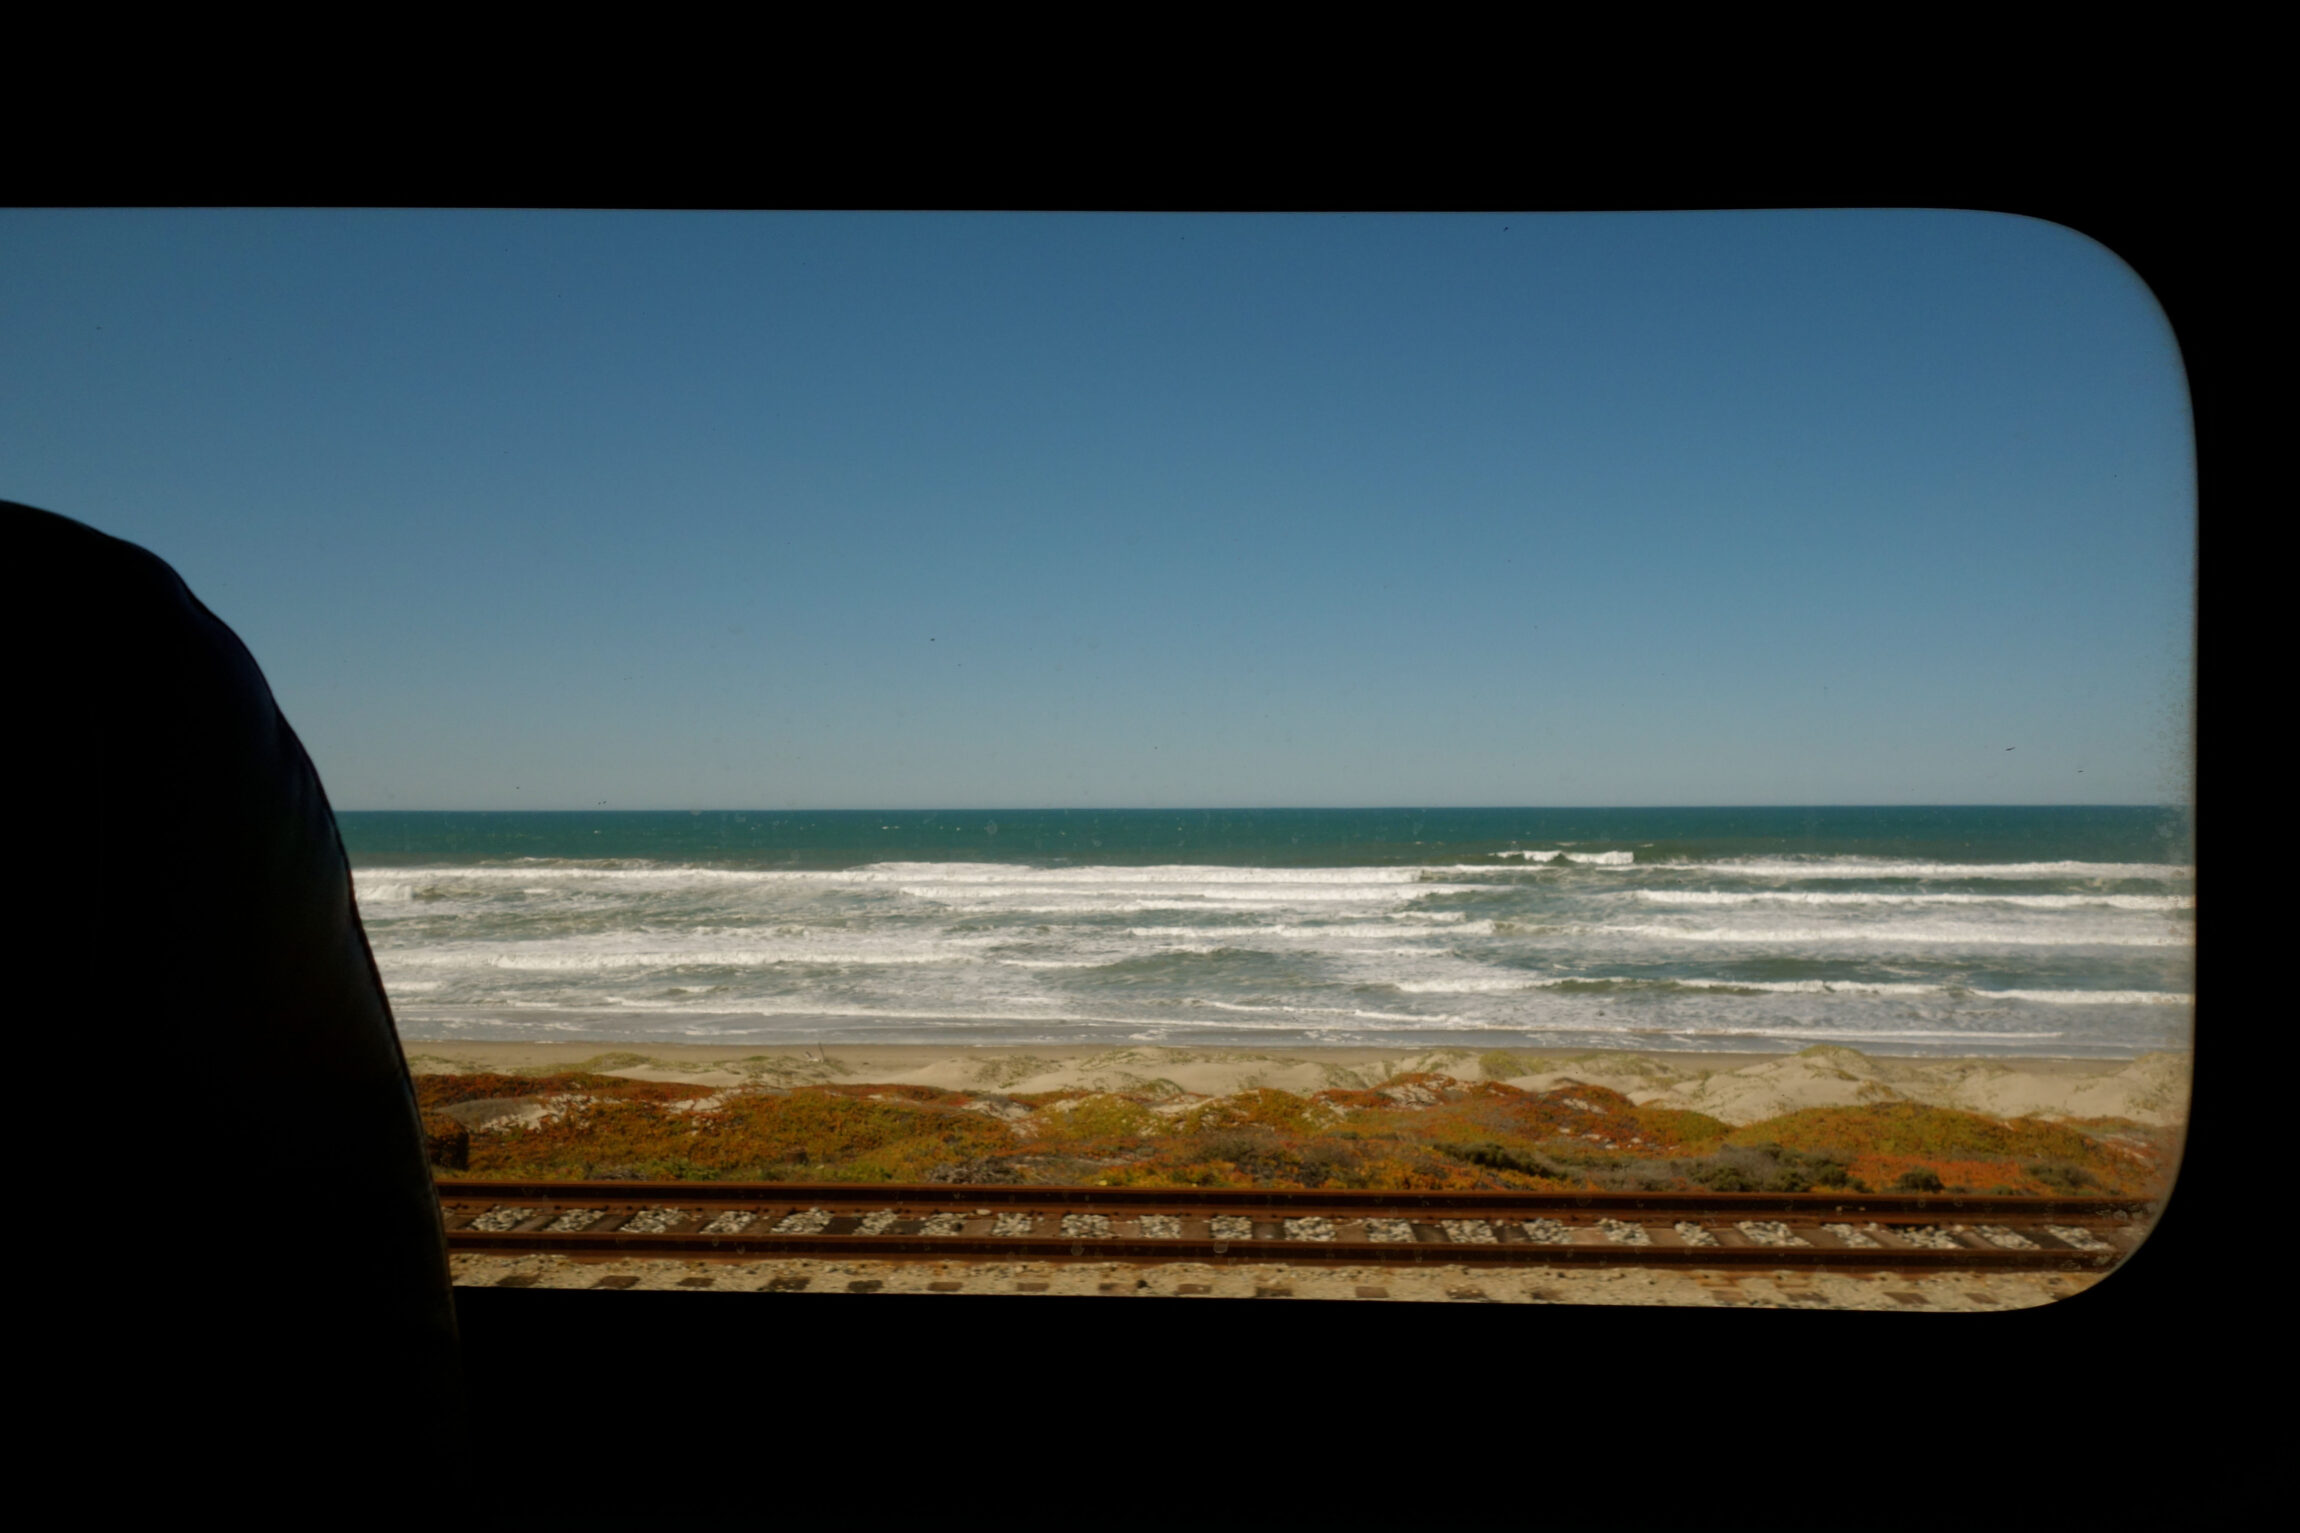 Ocean views from an Amtrak train in California